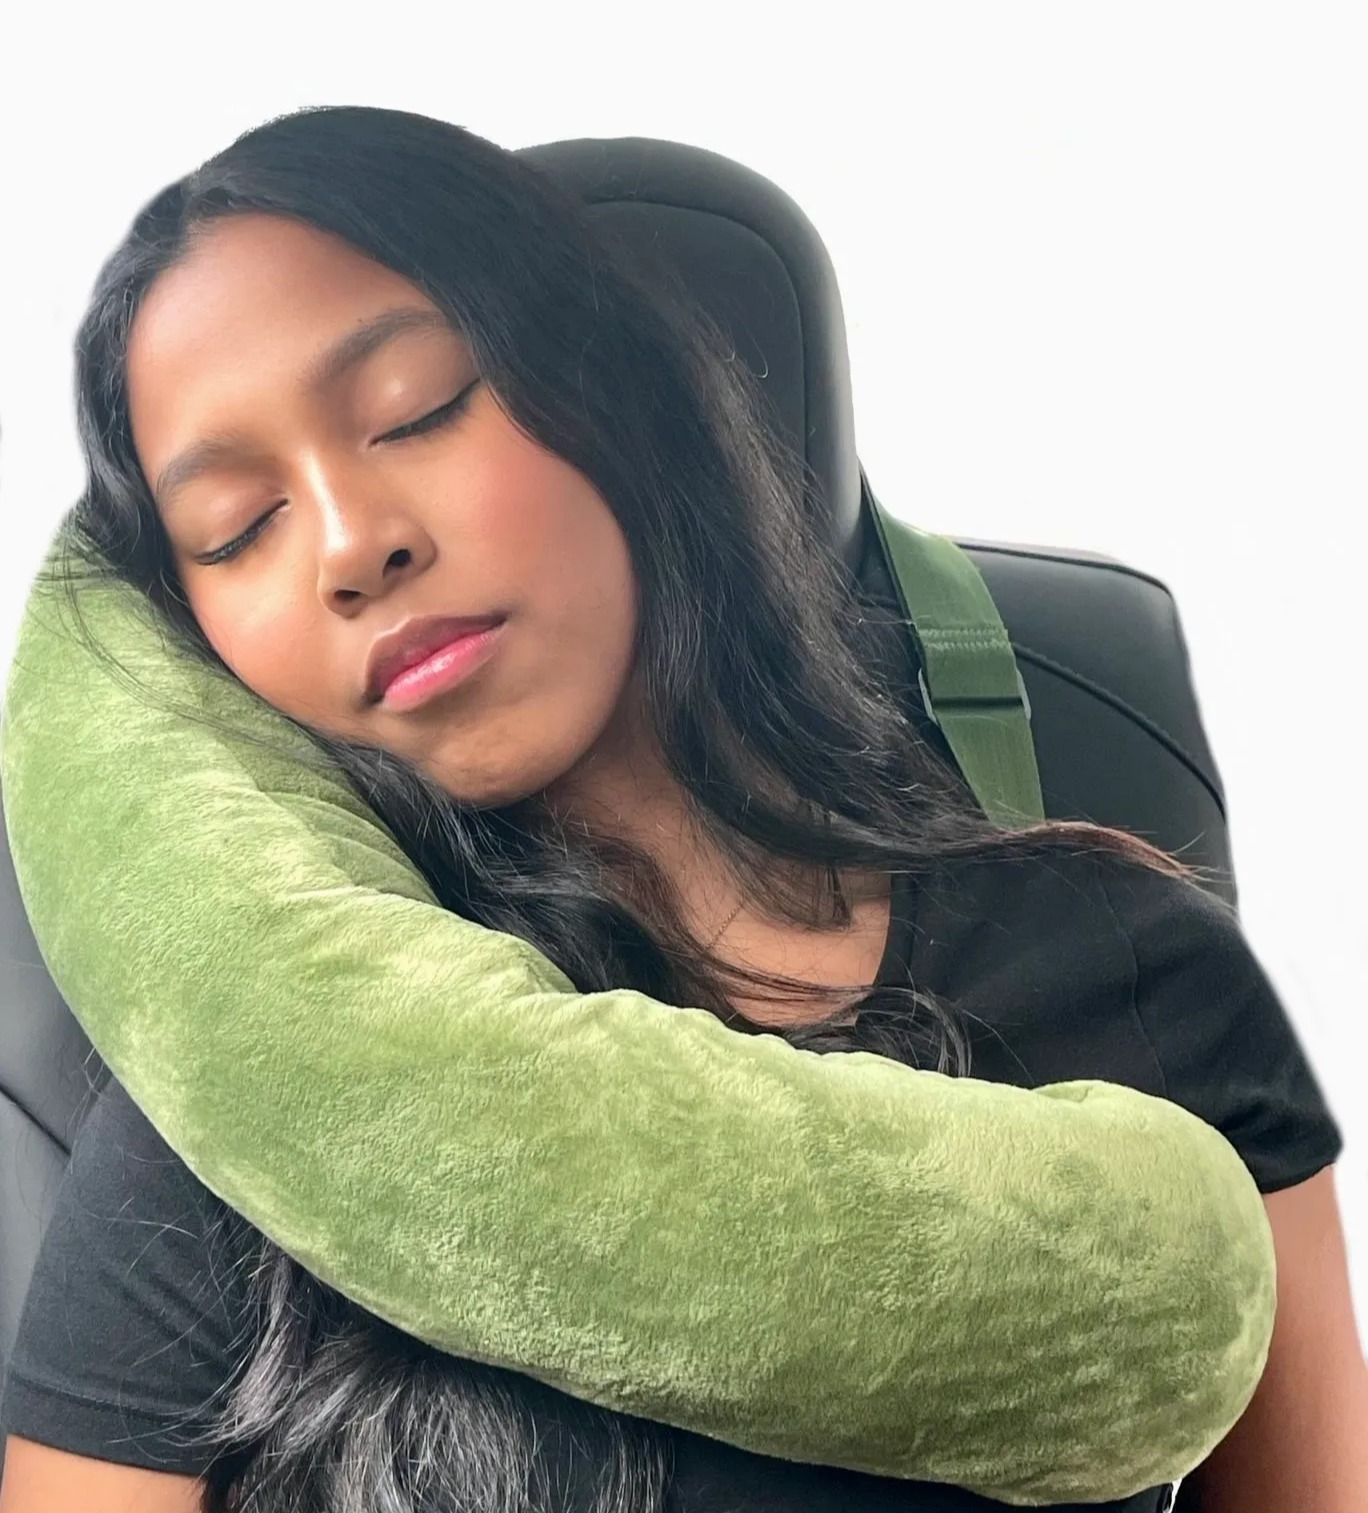 بالش خواب برای ماشین - خوابیدن در ماشین هنگام سفر